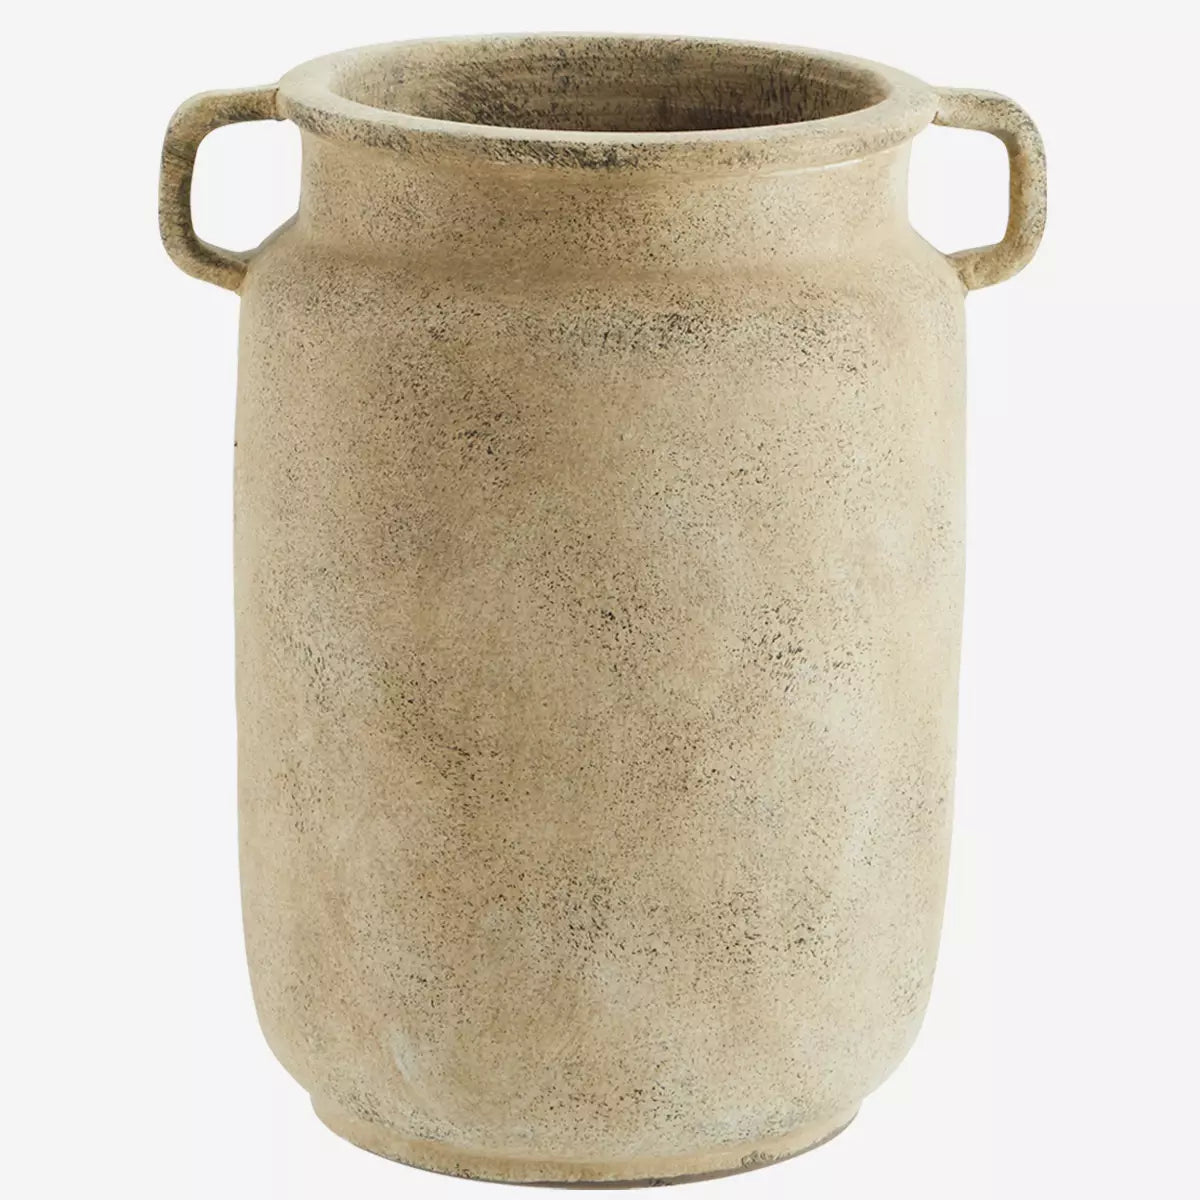 Terracotta Vase With Handles  Madam Stoltz